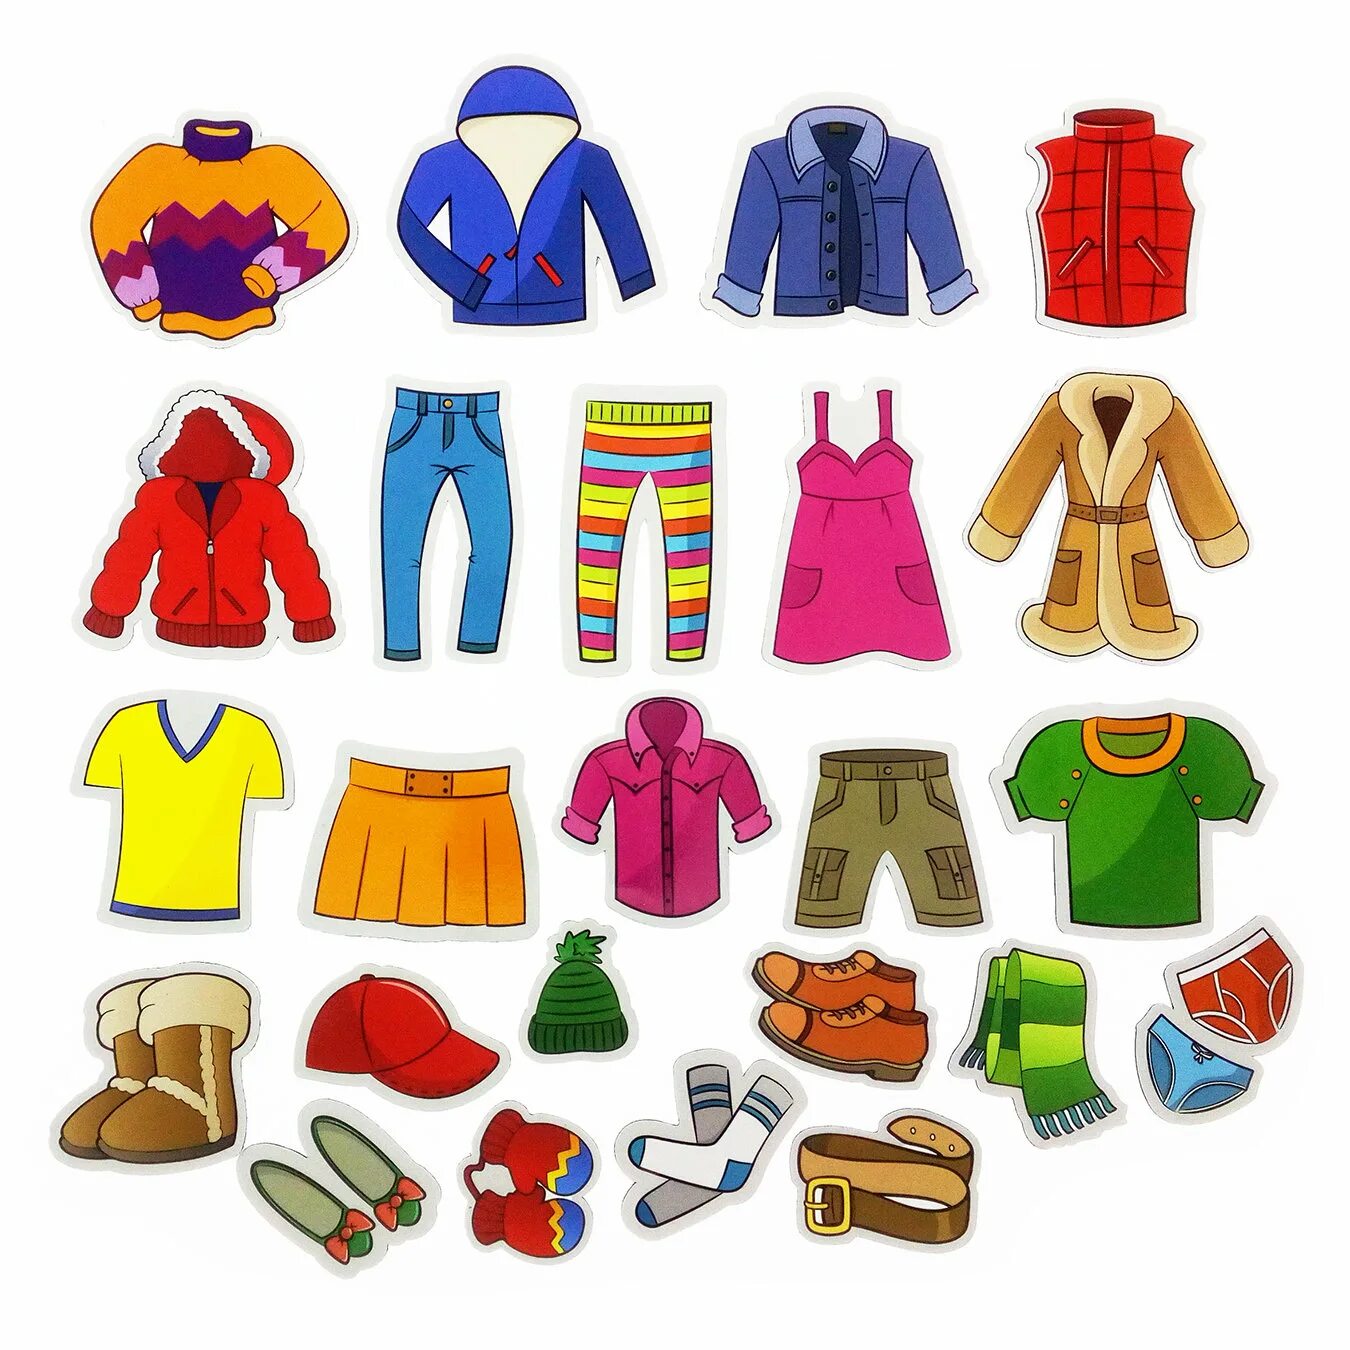 Какие предметы одежды. Игровой набор mag-Rus предметы одежды (24 элемента) nf1016. Одежда для детей. Одежда для дошкольников. Изображение одежды.